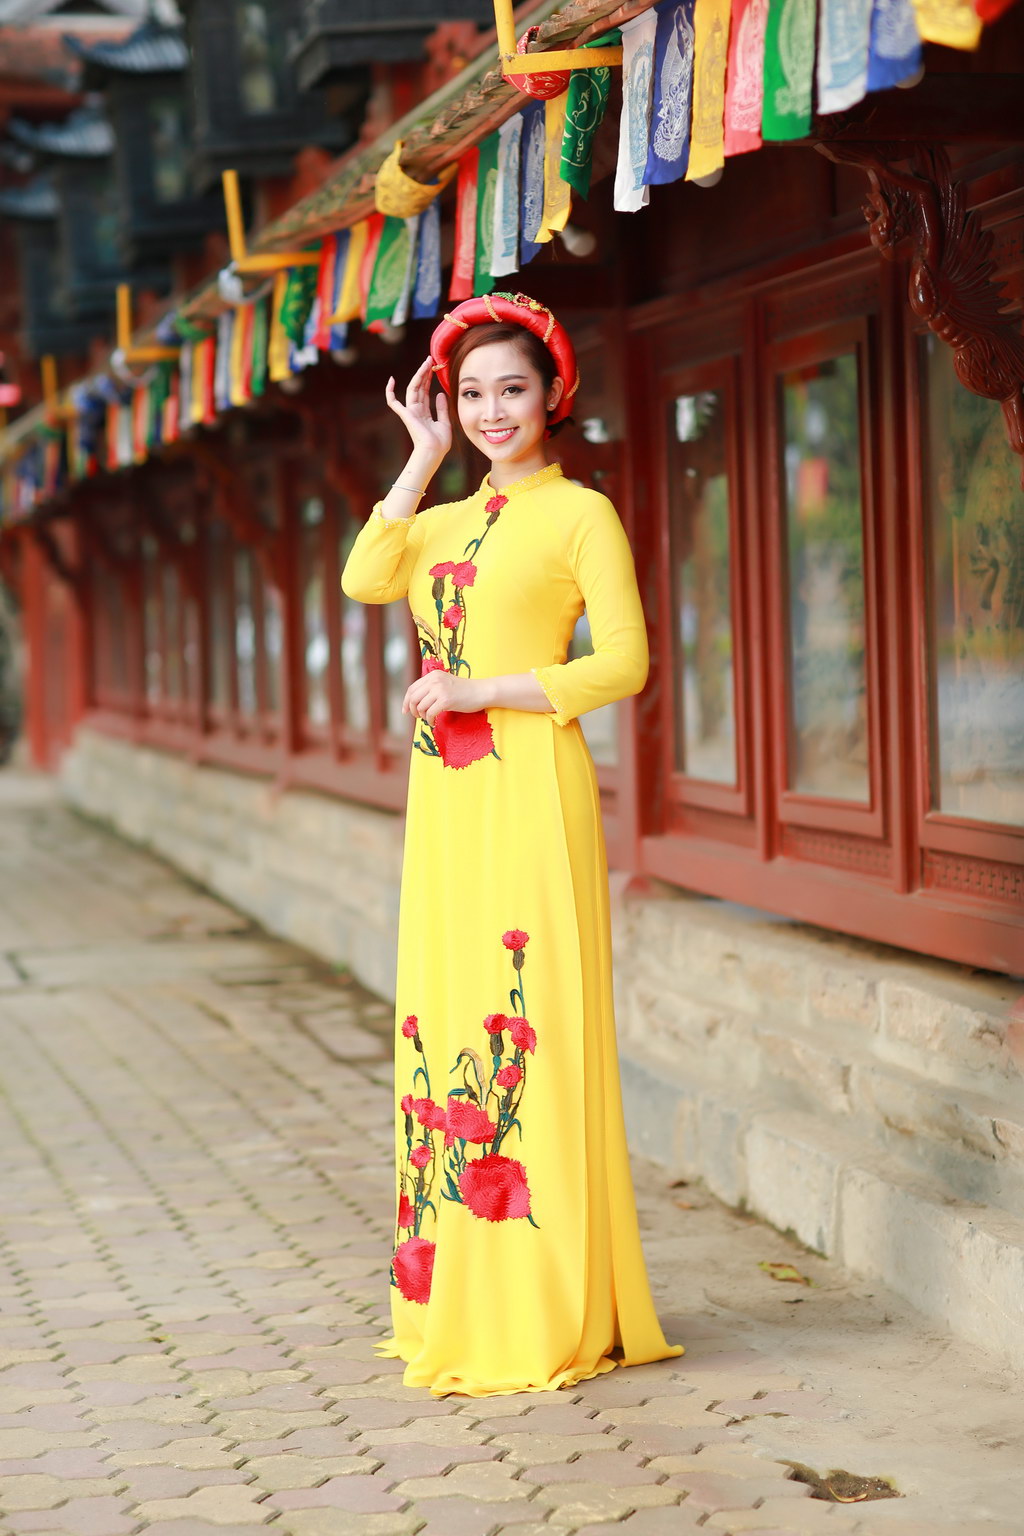 
Là một trong những nhà thiết kế có tình yêu mãnh liệt với những đường nét dịu dàng của trang phục cổ truyền dân tộc, Anh Thư luôn mong muốn mang đến vẻ đẹp đằm thắm, nền nã cho người con gái Việt.
